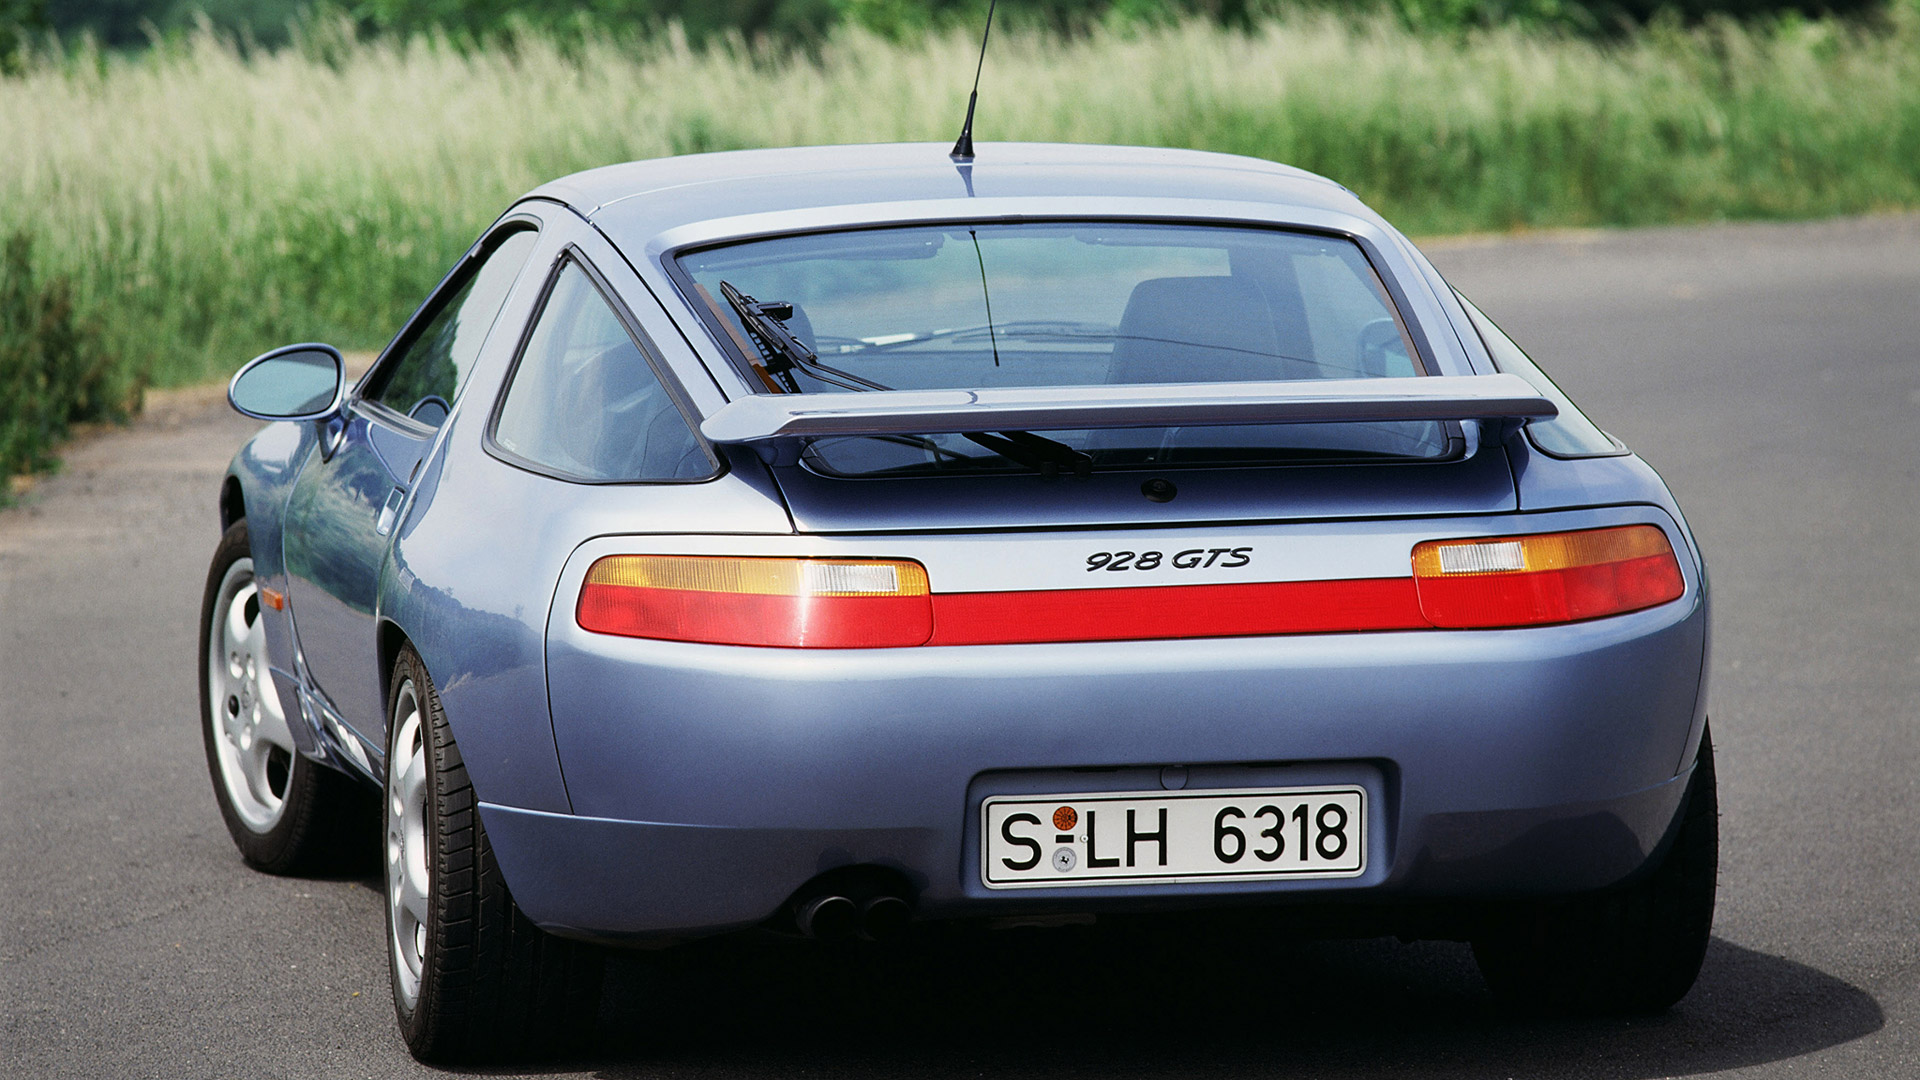  1991 Porsche 928 GTS Wallpaper.